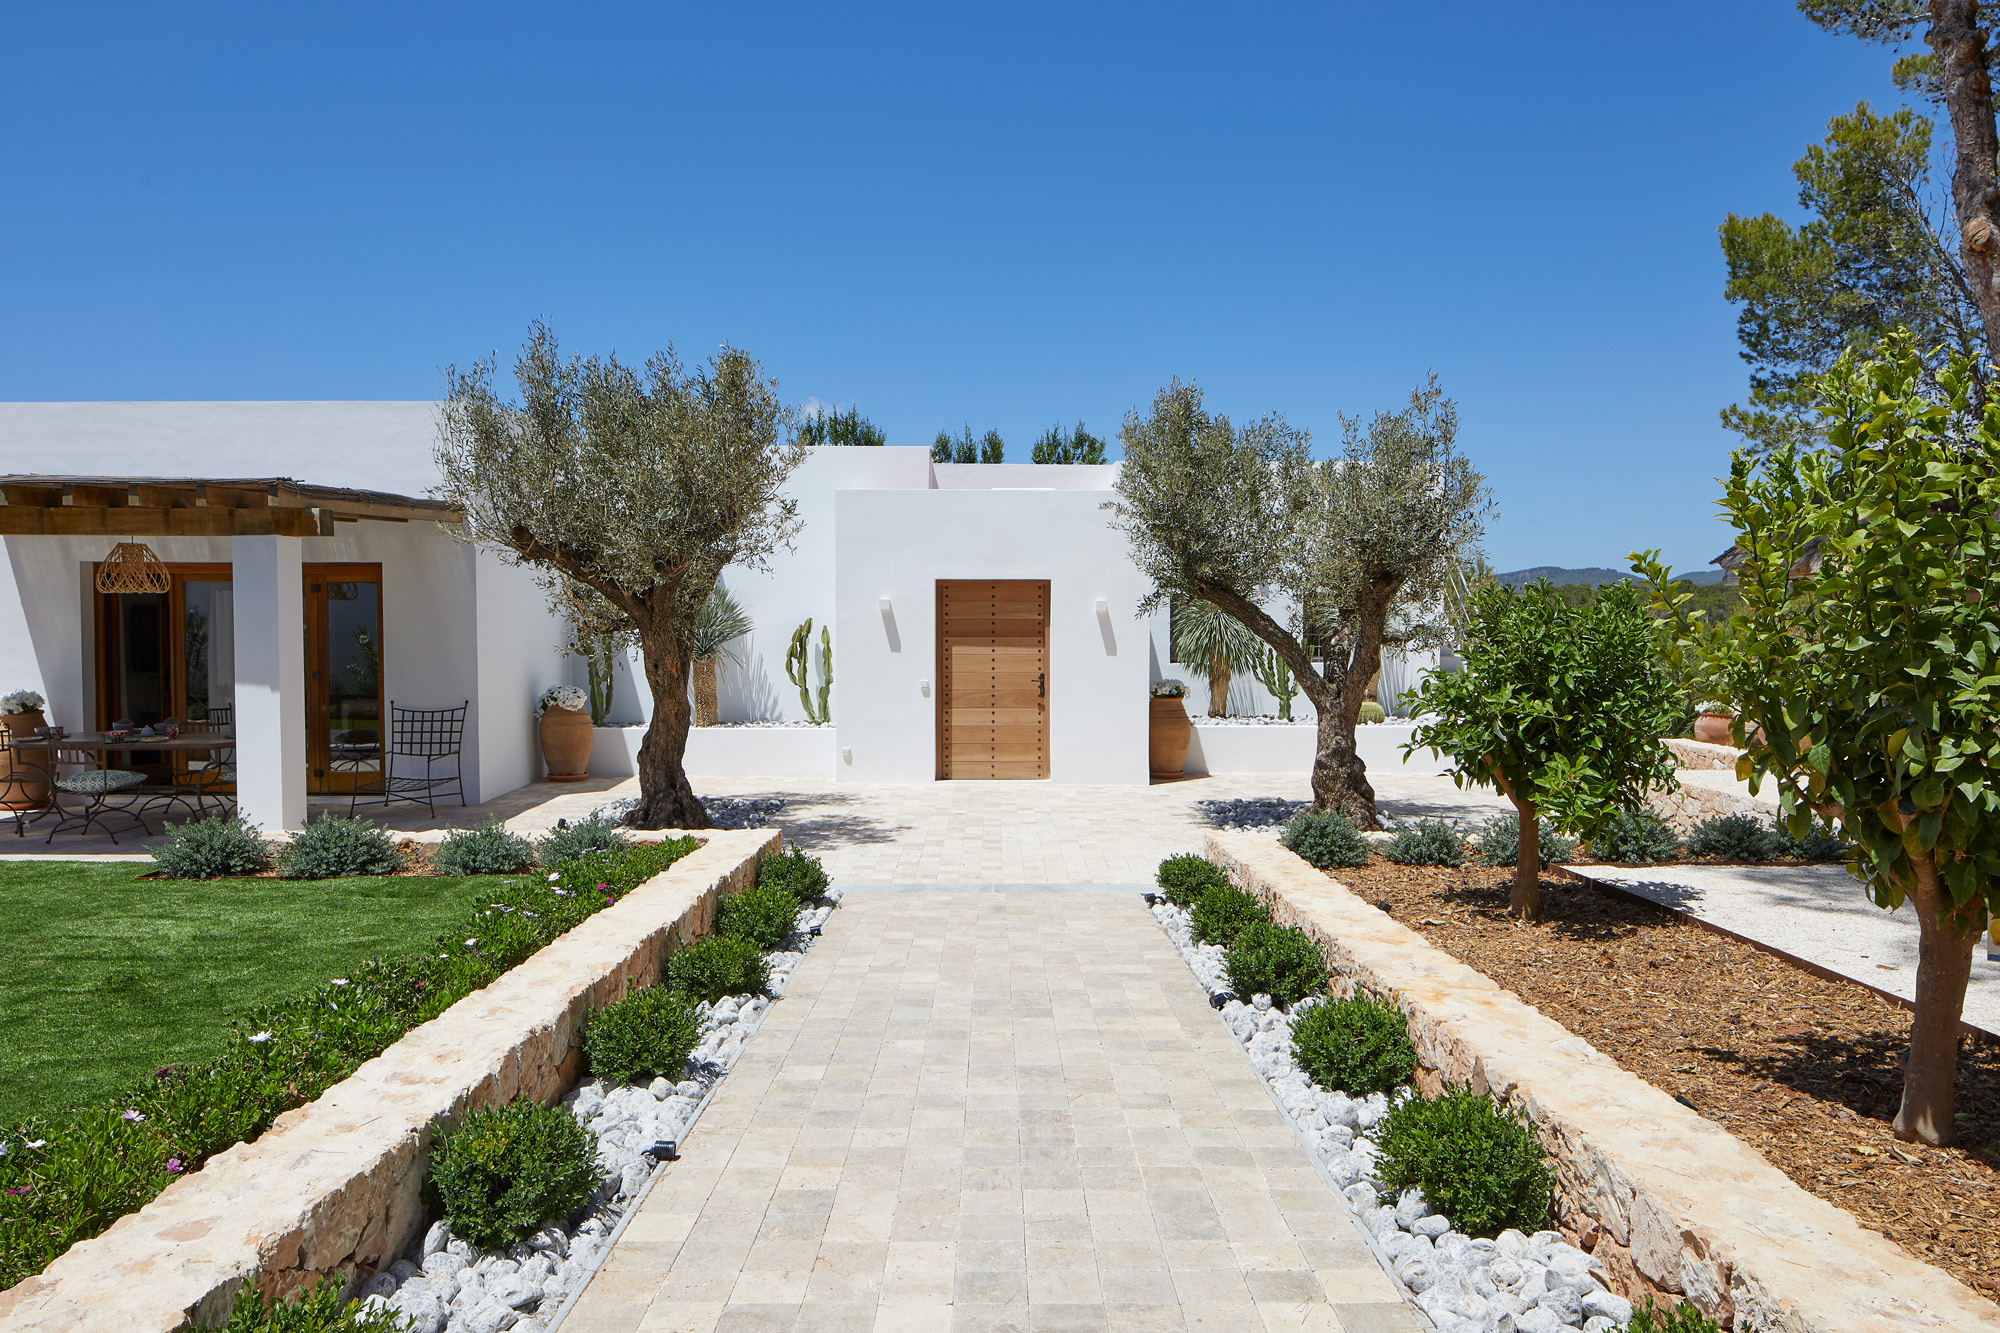 Symmetrical exterior entrance to a design-led rental villa in Ibiza